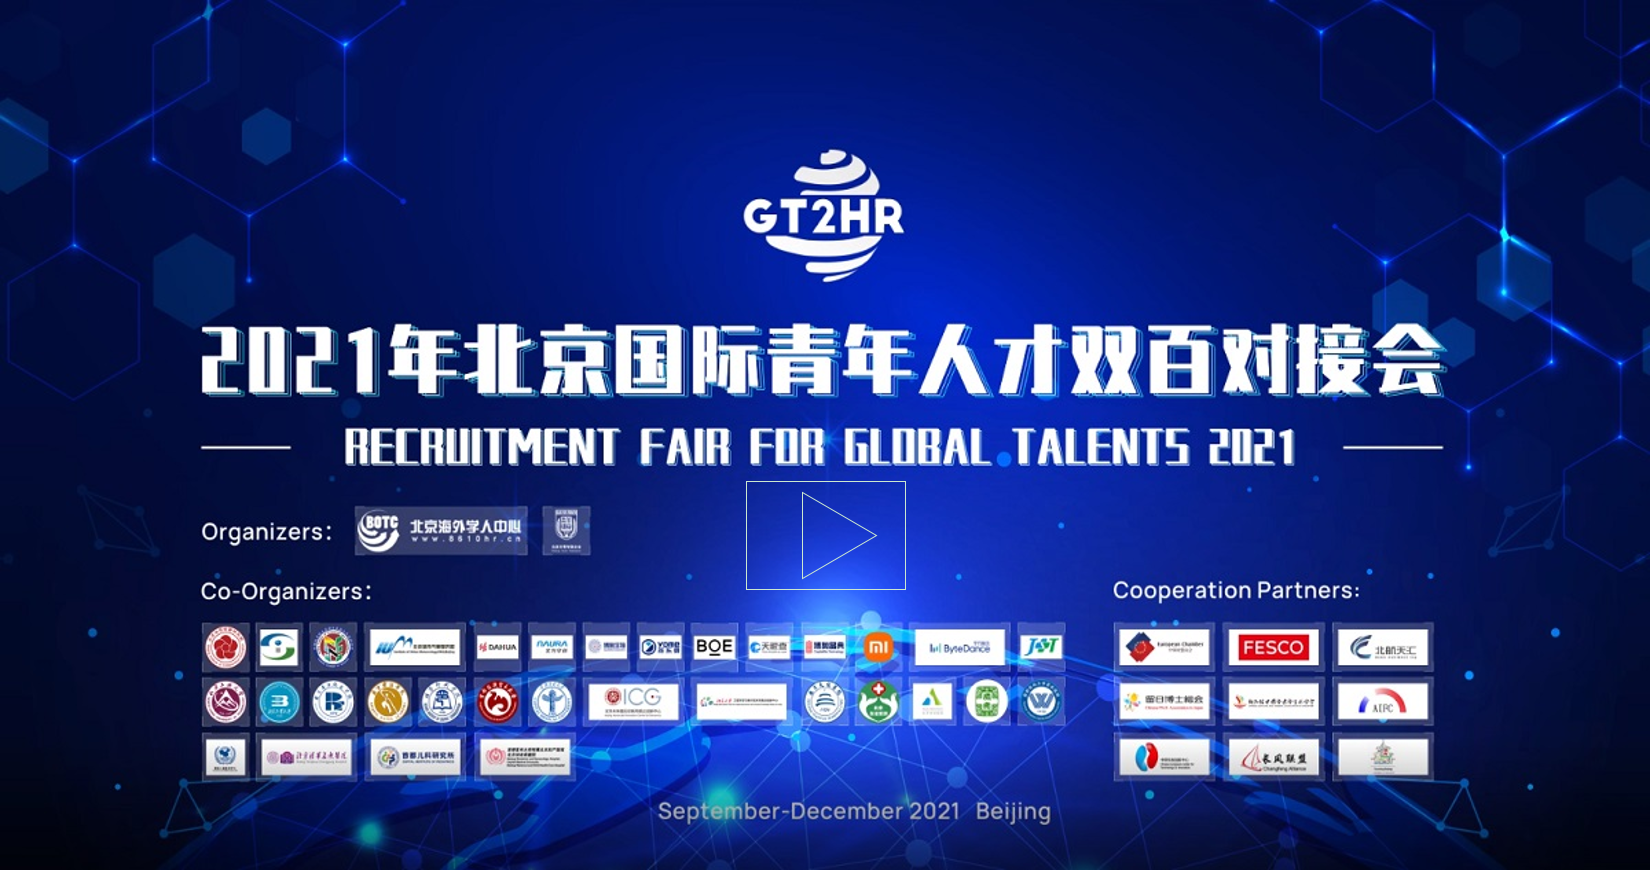 Video: GT2HR Recruitment Fair